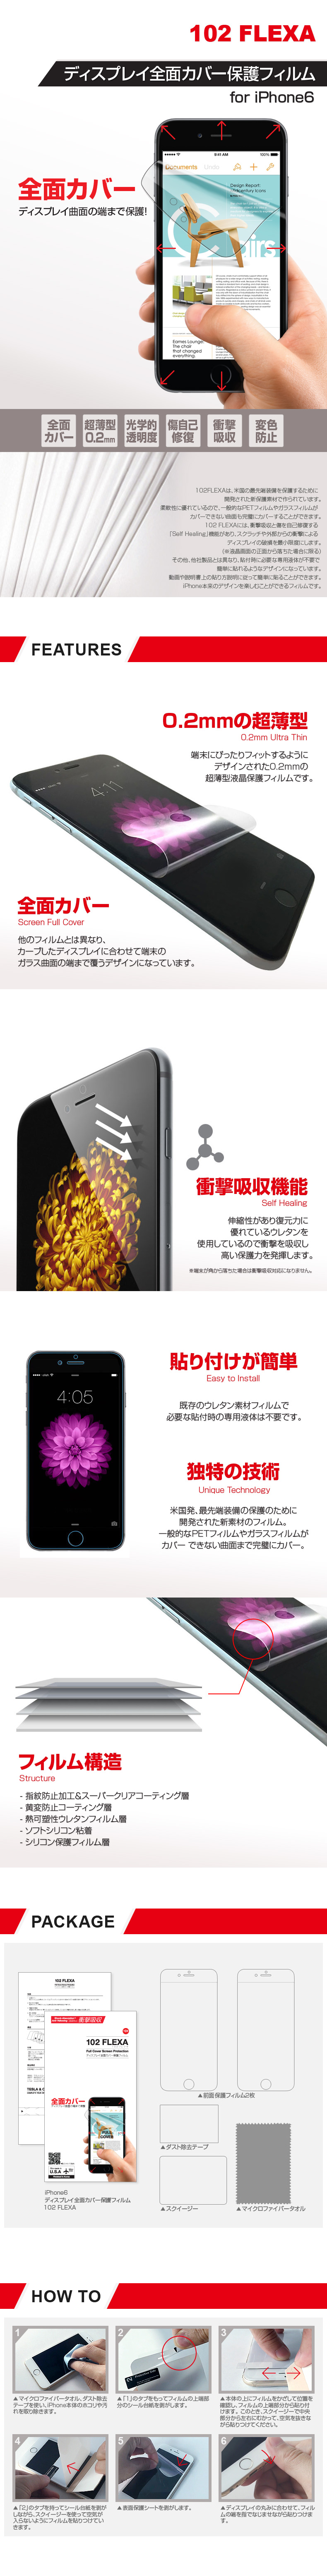 商品詳細-iPhone6 フィルム